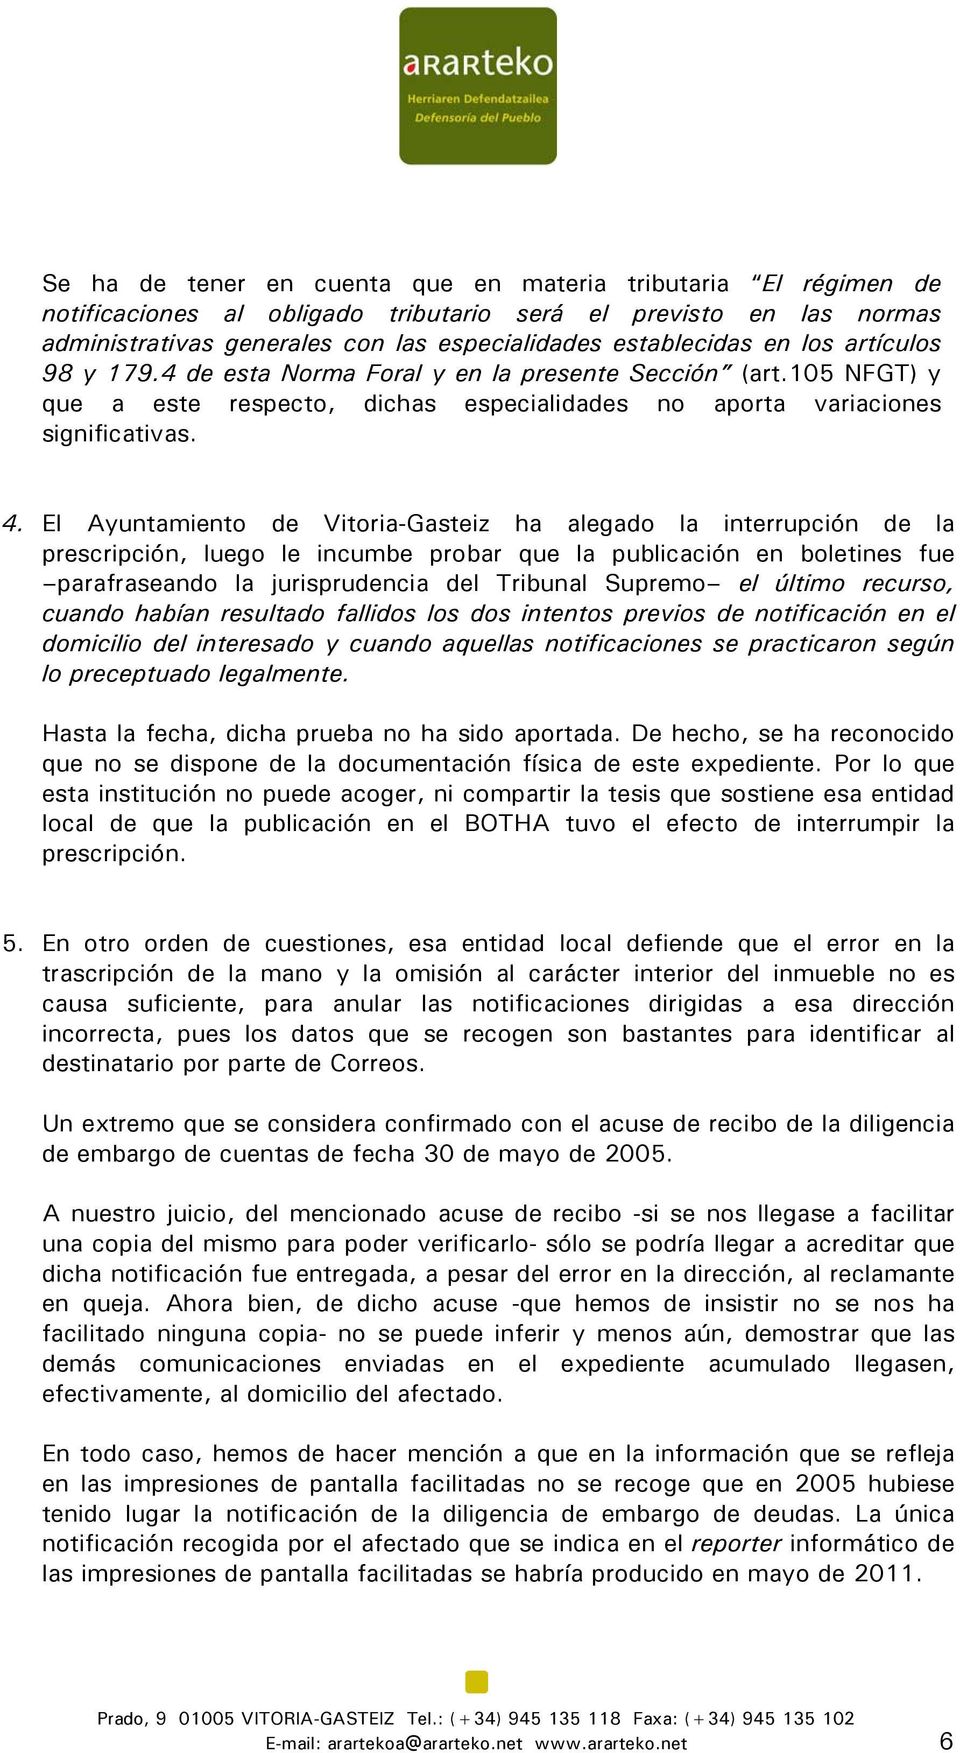 El Ayuntamiento de Vitoria-Gasteiz ha alegado la interrupción de la prescripción, luego le incumbe probar que la publicación en boletines fue parafraseando la jurisprudencia del Tribunal Supremo el